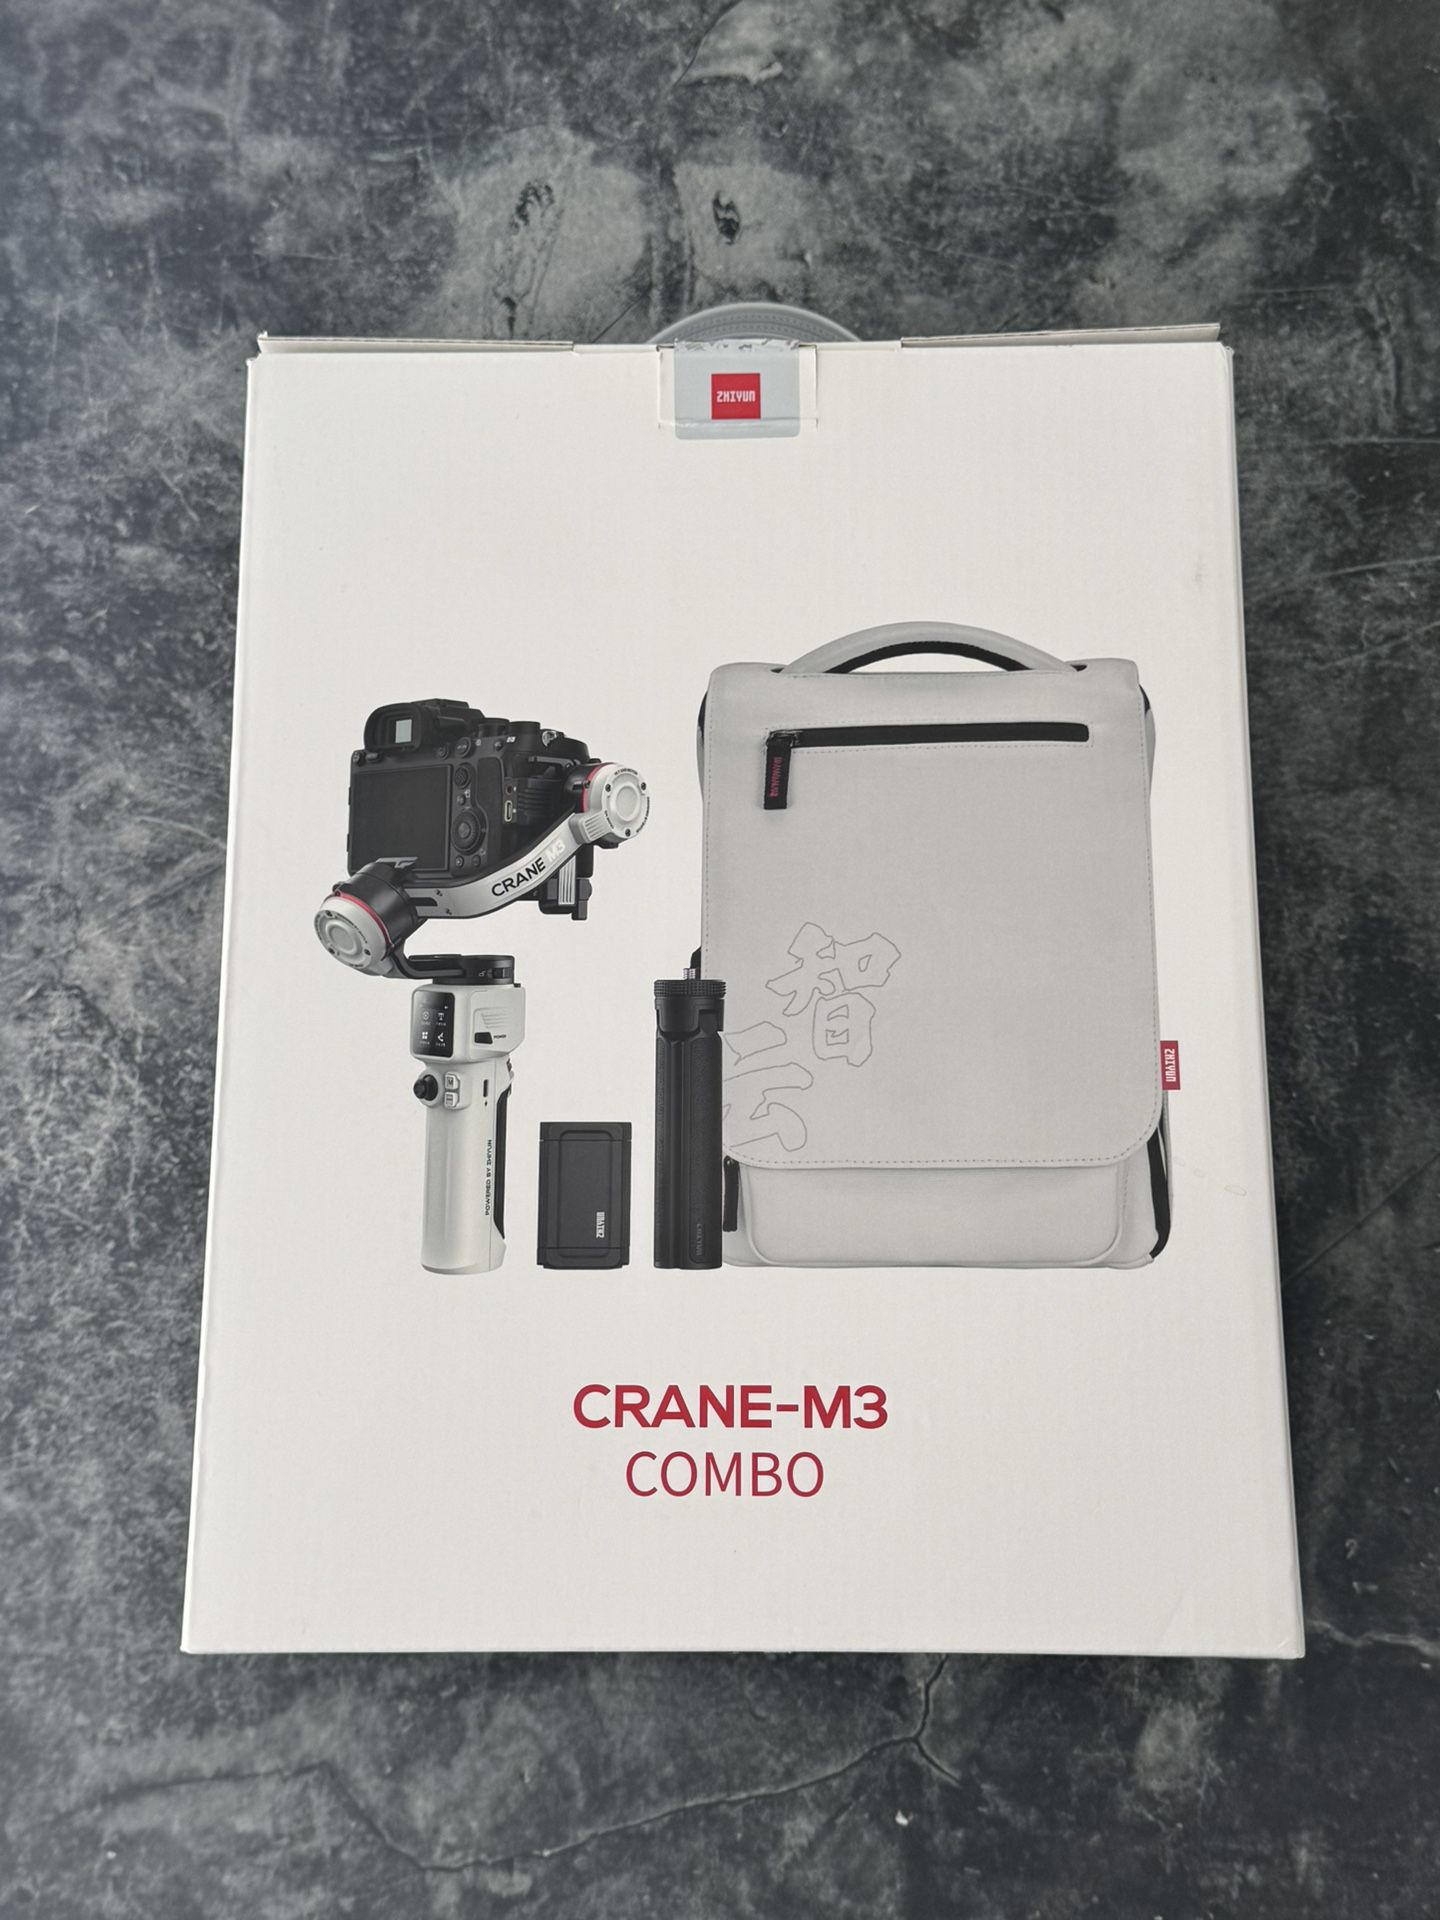 Zhiyun Crane M3 Gimbal For Mirrorless Camera. New!